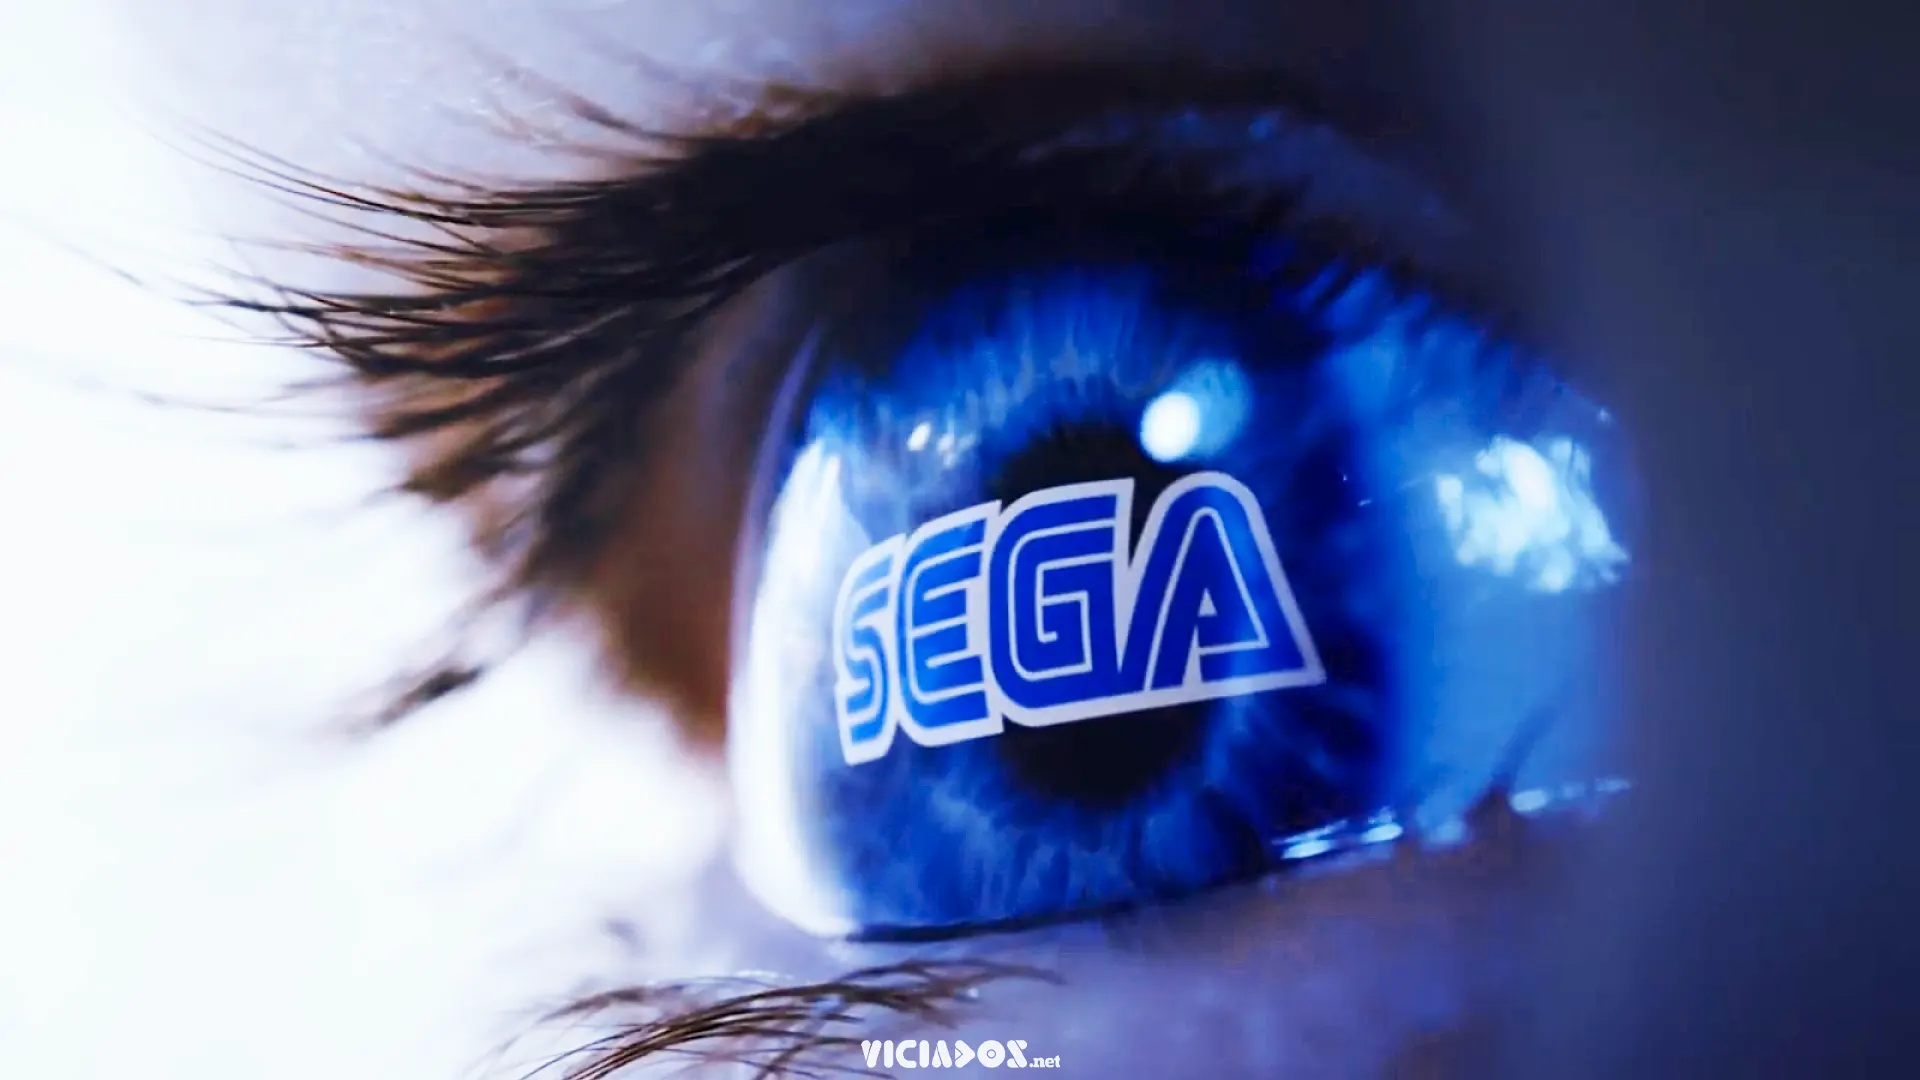 Suposta janela de lançamentos da Sega vaza no Reddit 2022 Viciados